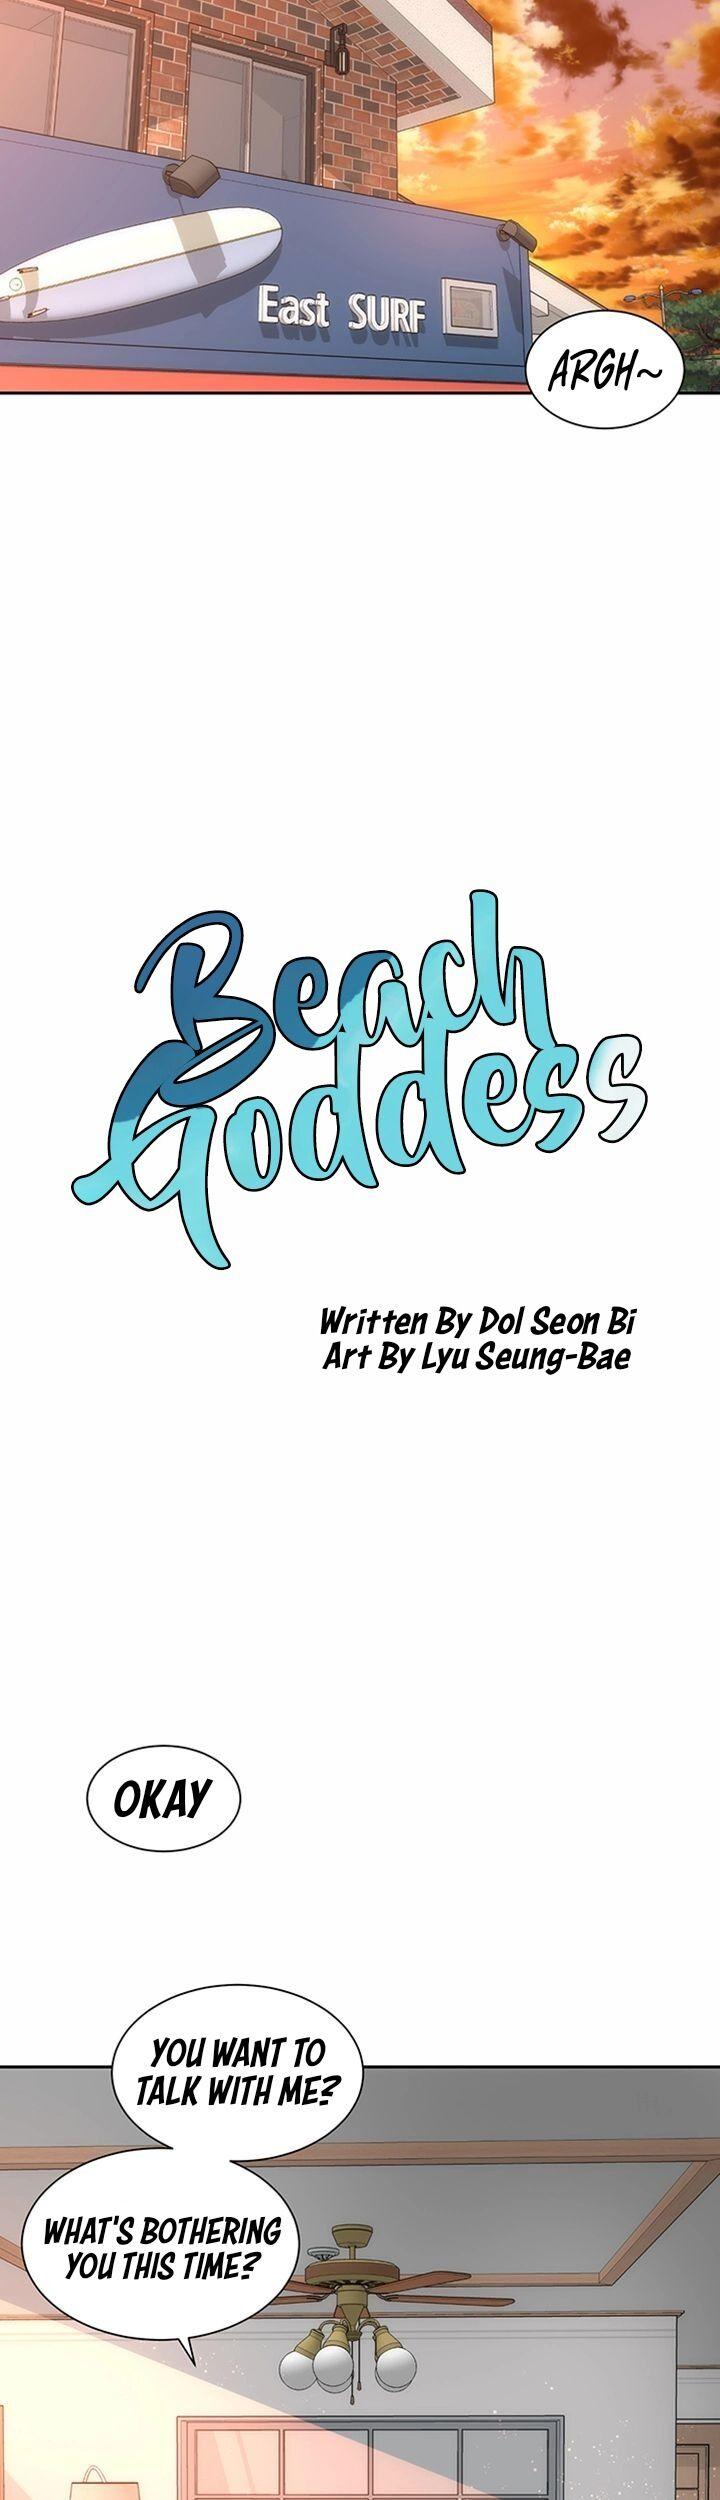 Beach Goddess 462